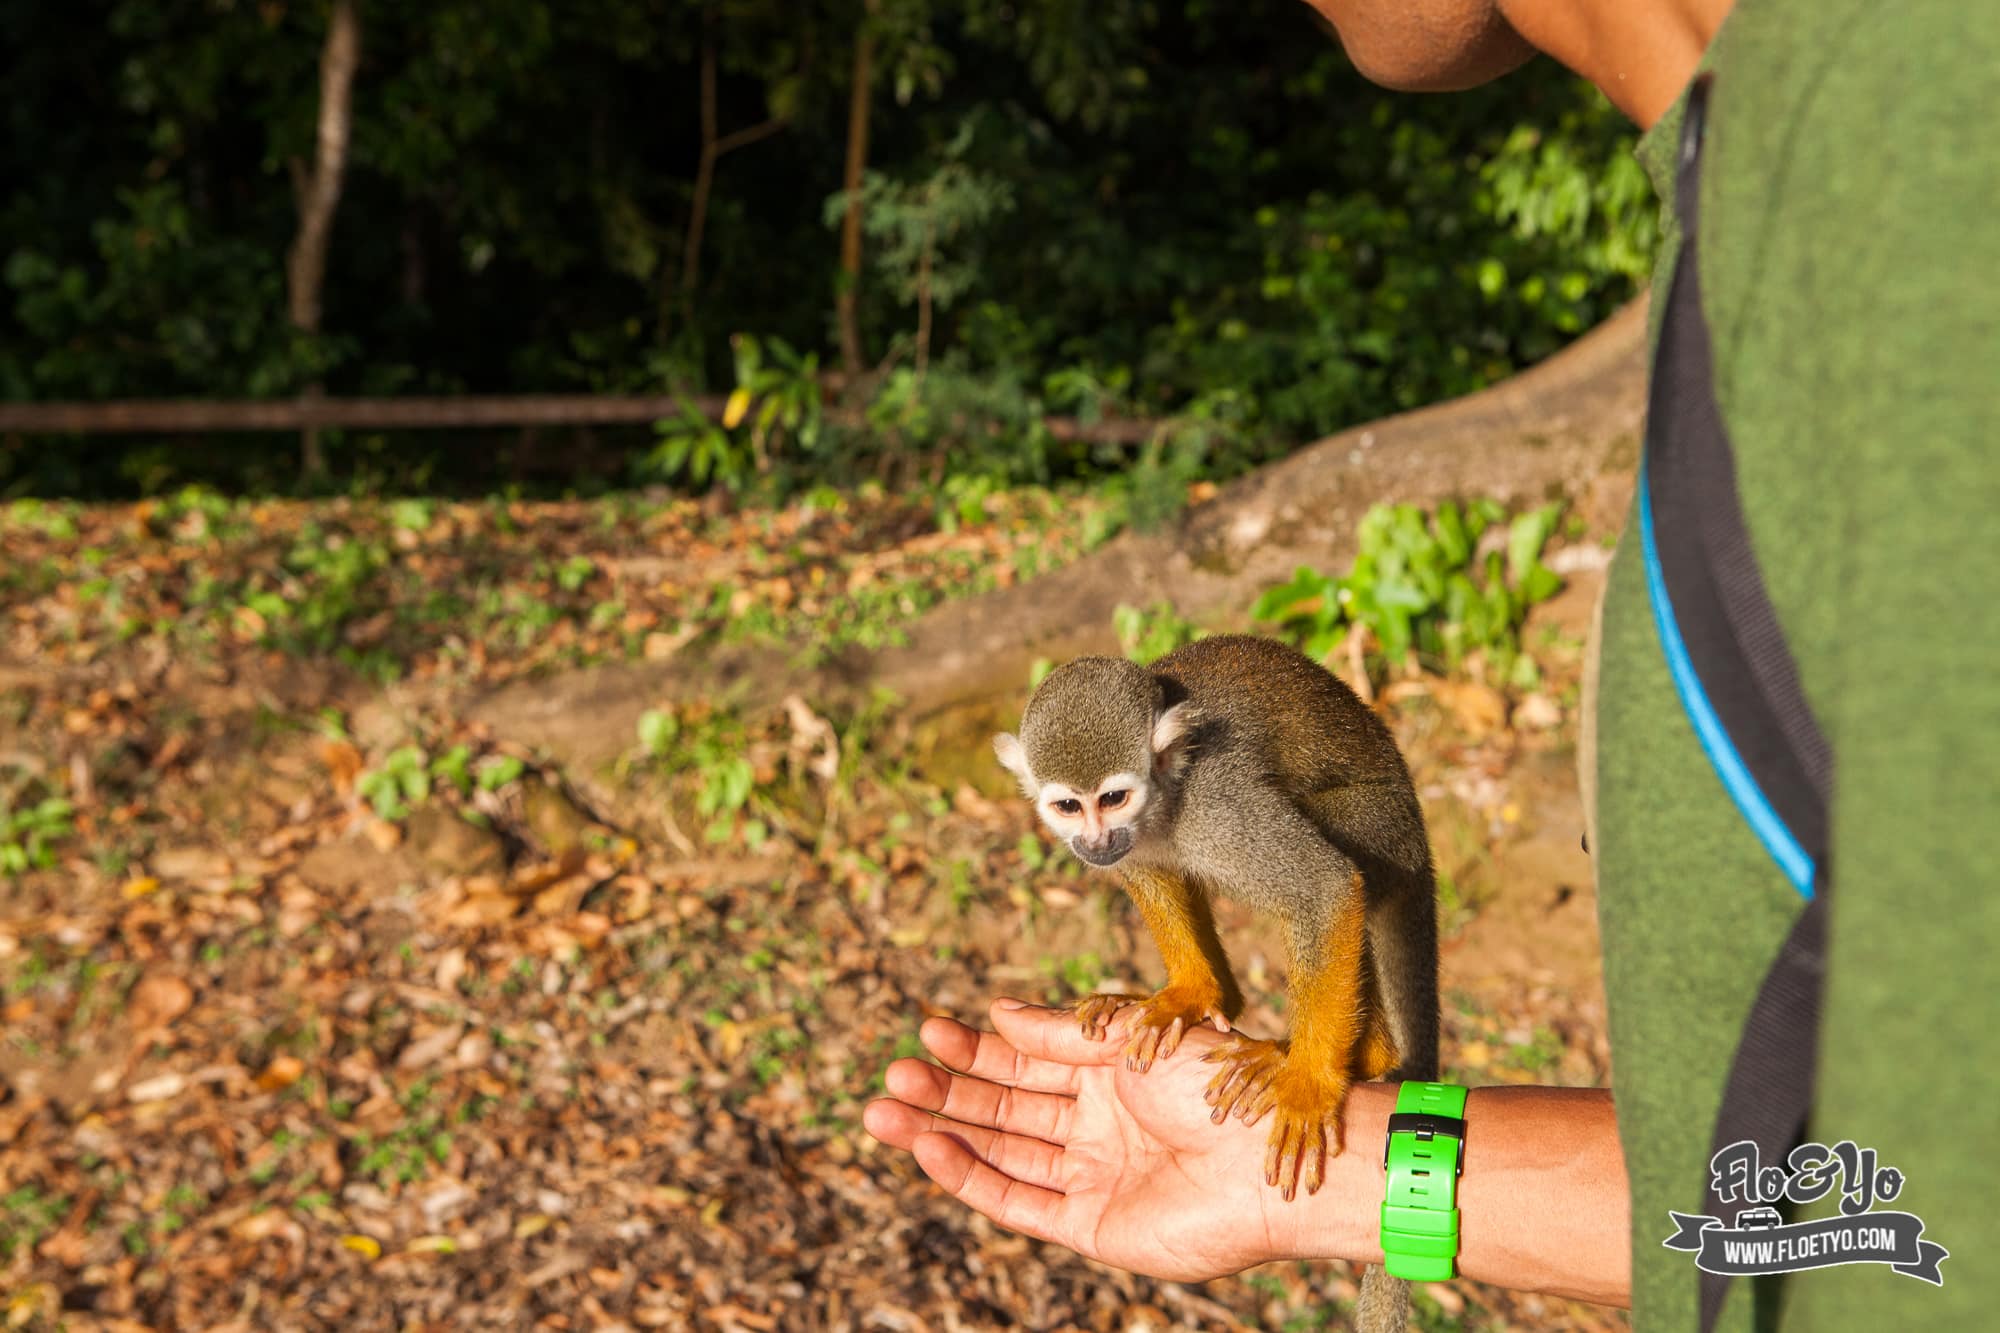 Voir des singes Saïmiri à l'ilet la mére en Guyane